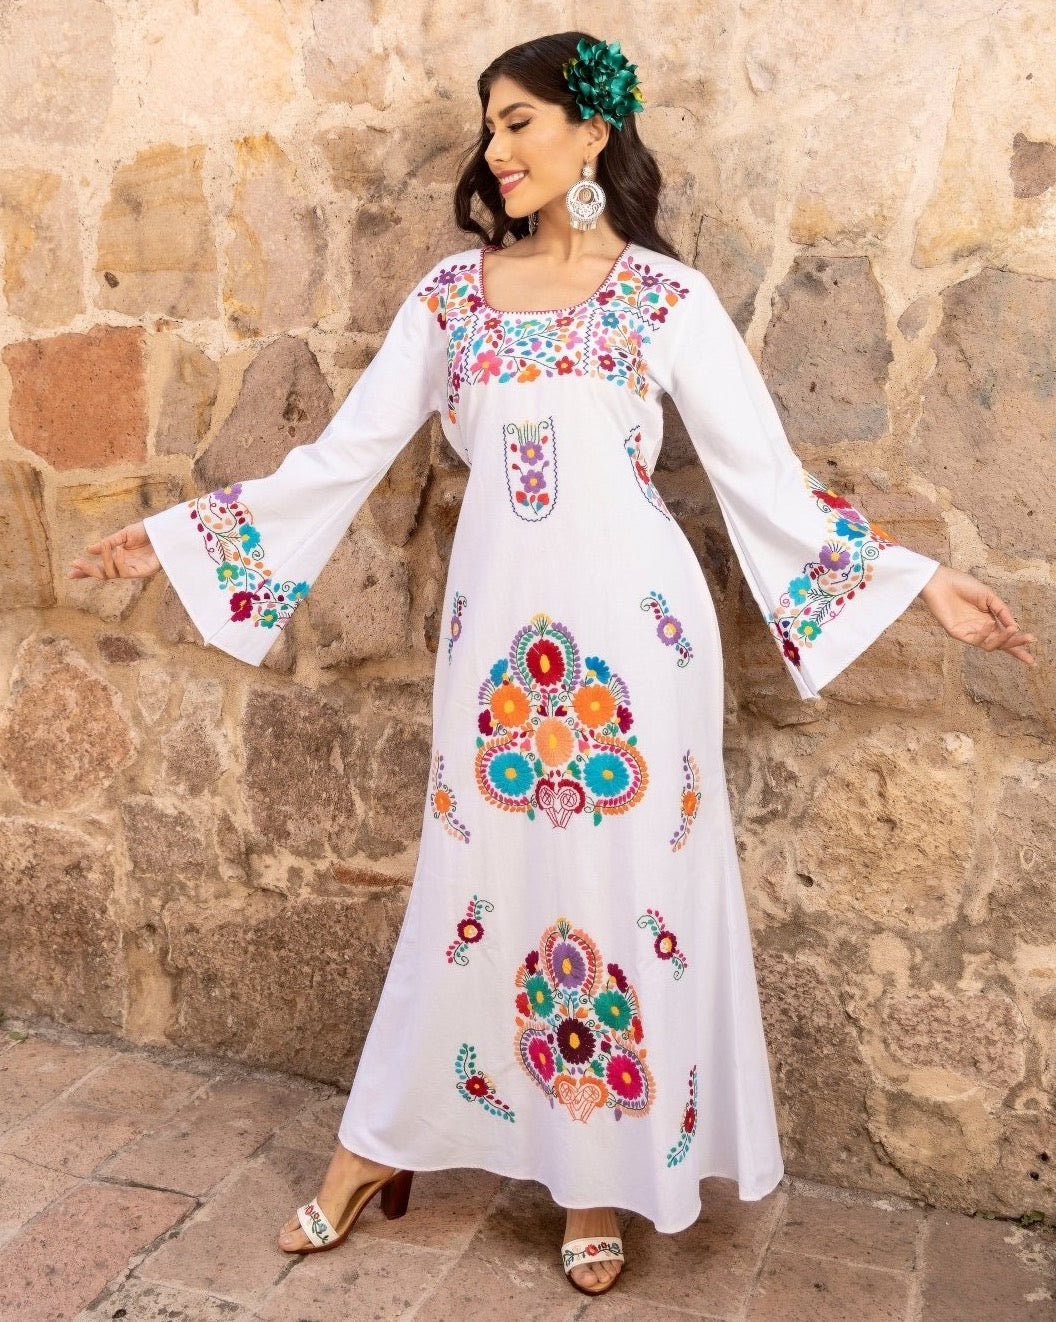 Multicolor Floral Mexican Dress. White Dress-Multicolor Floral Design